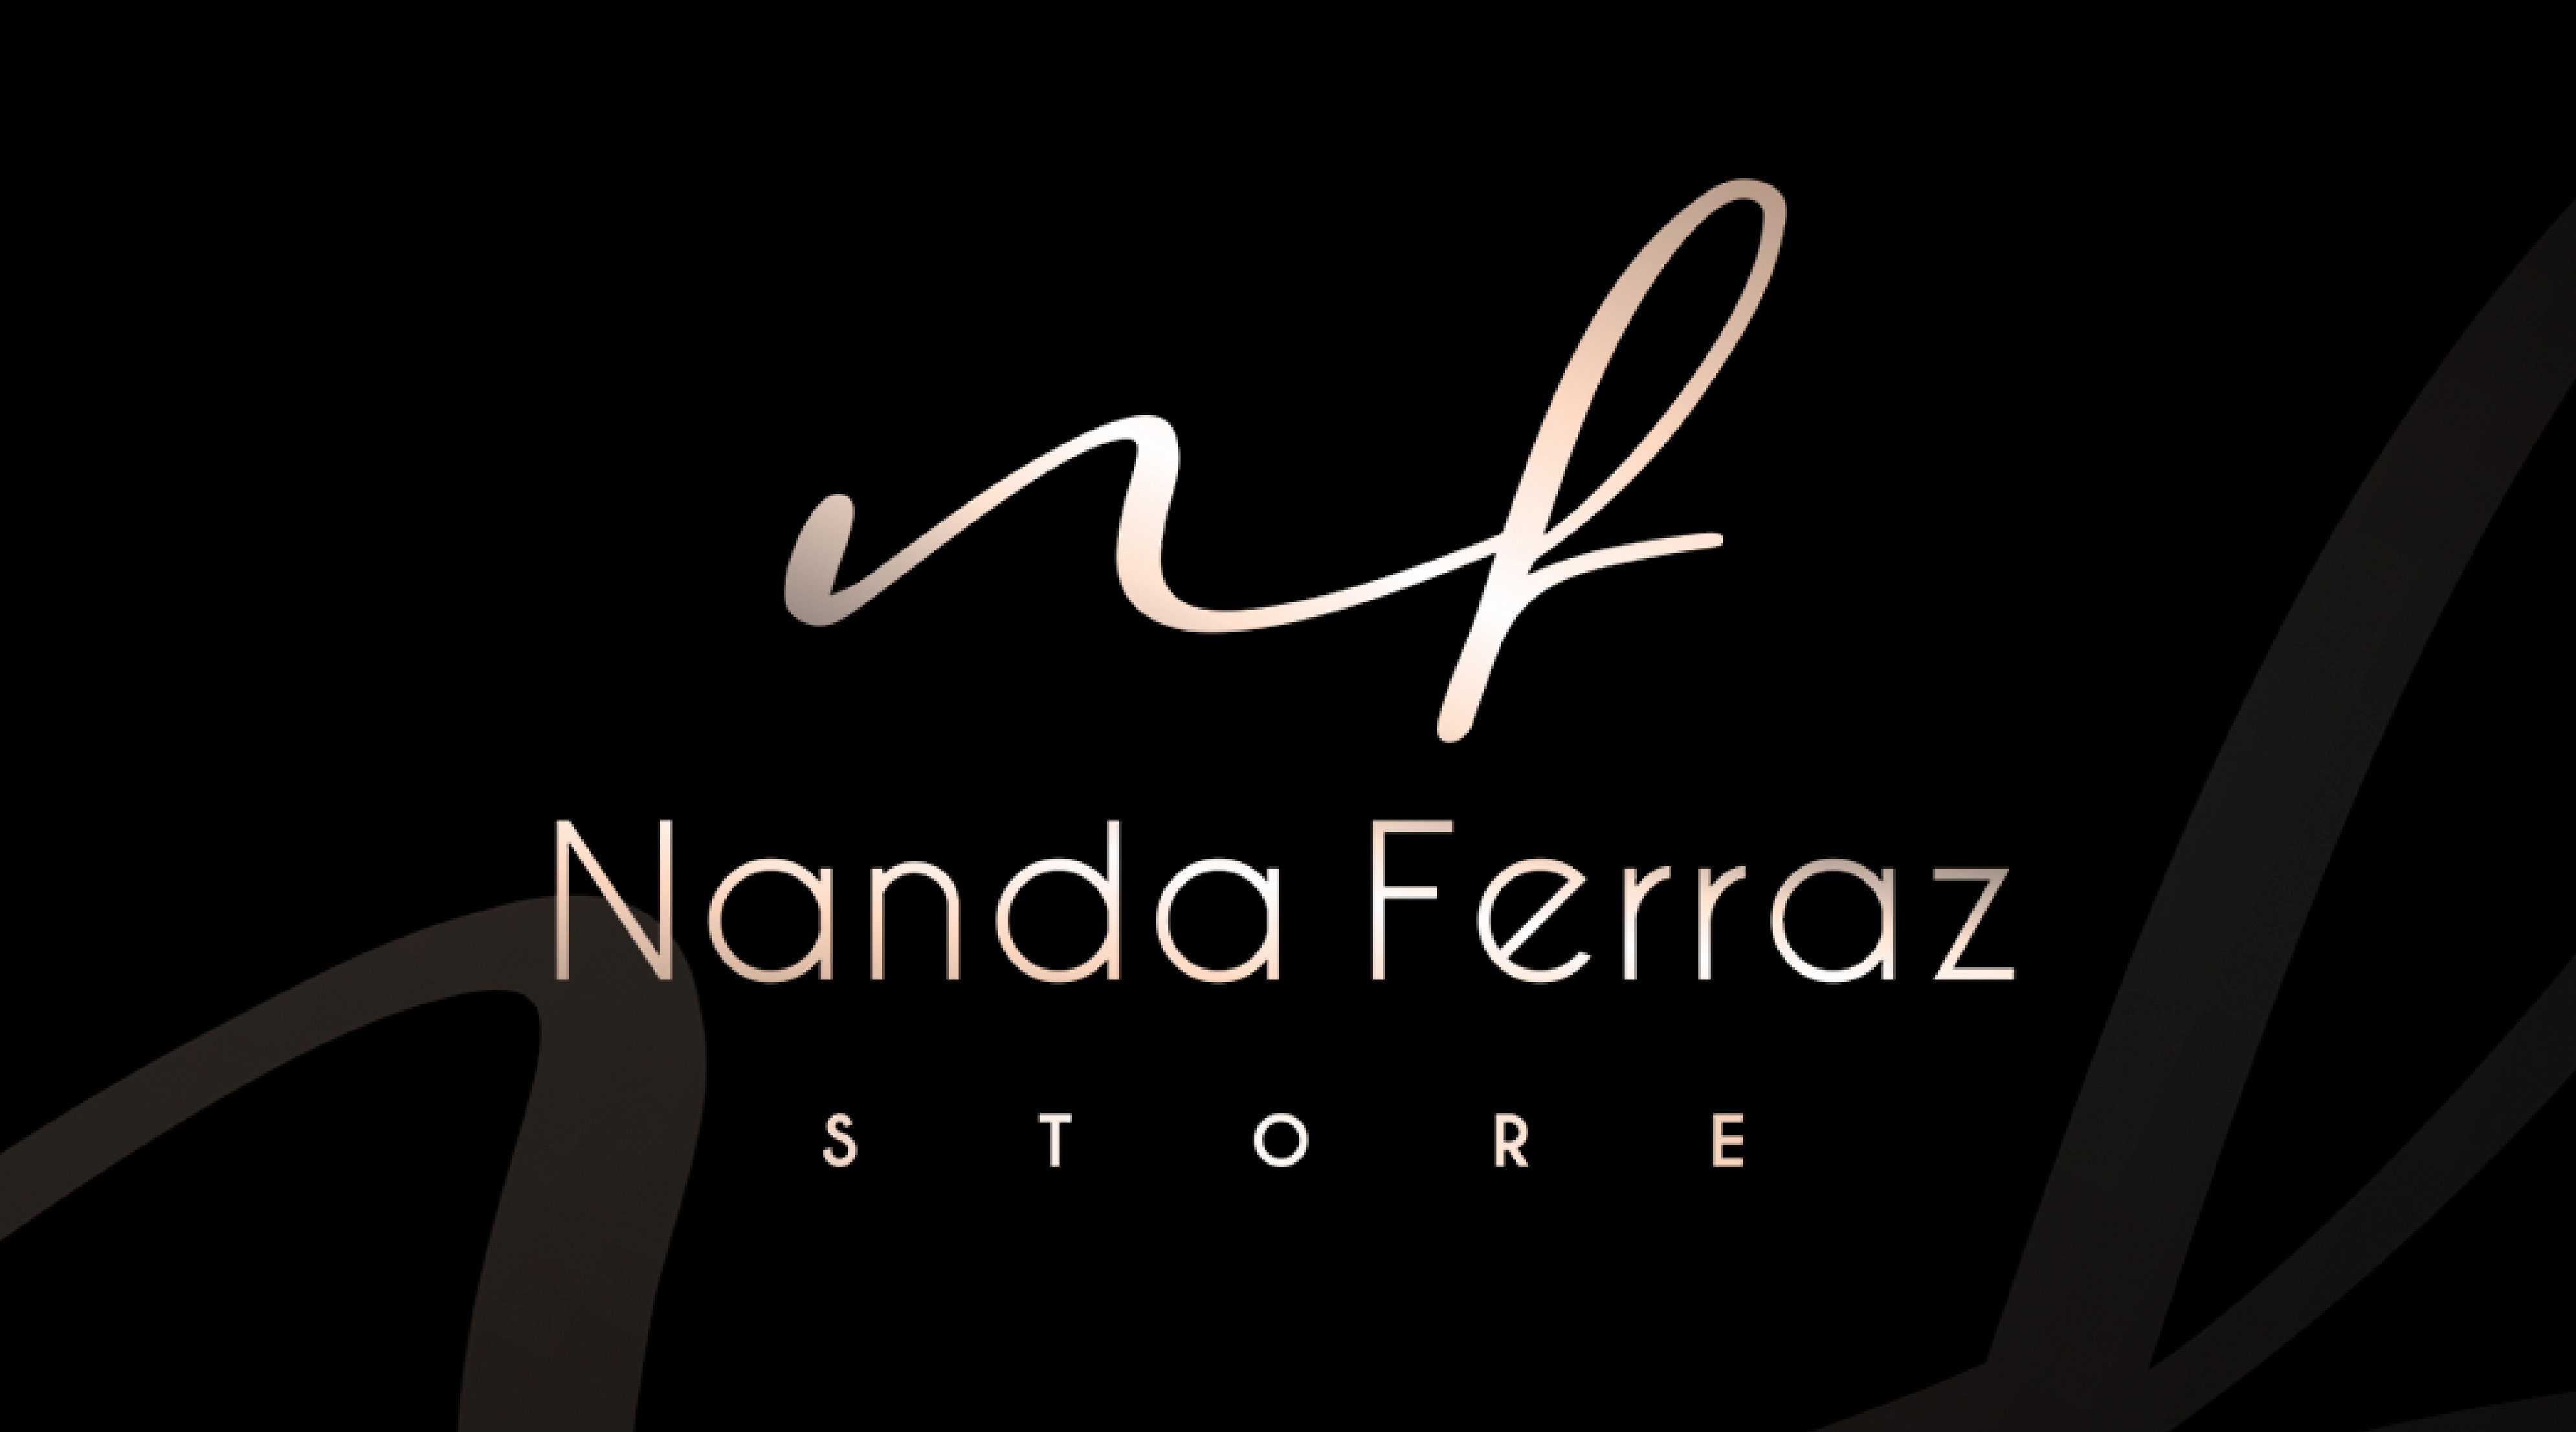 Nanda Ferraz Store